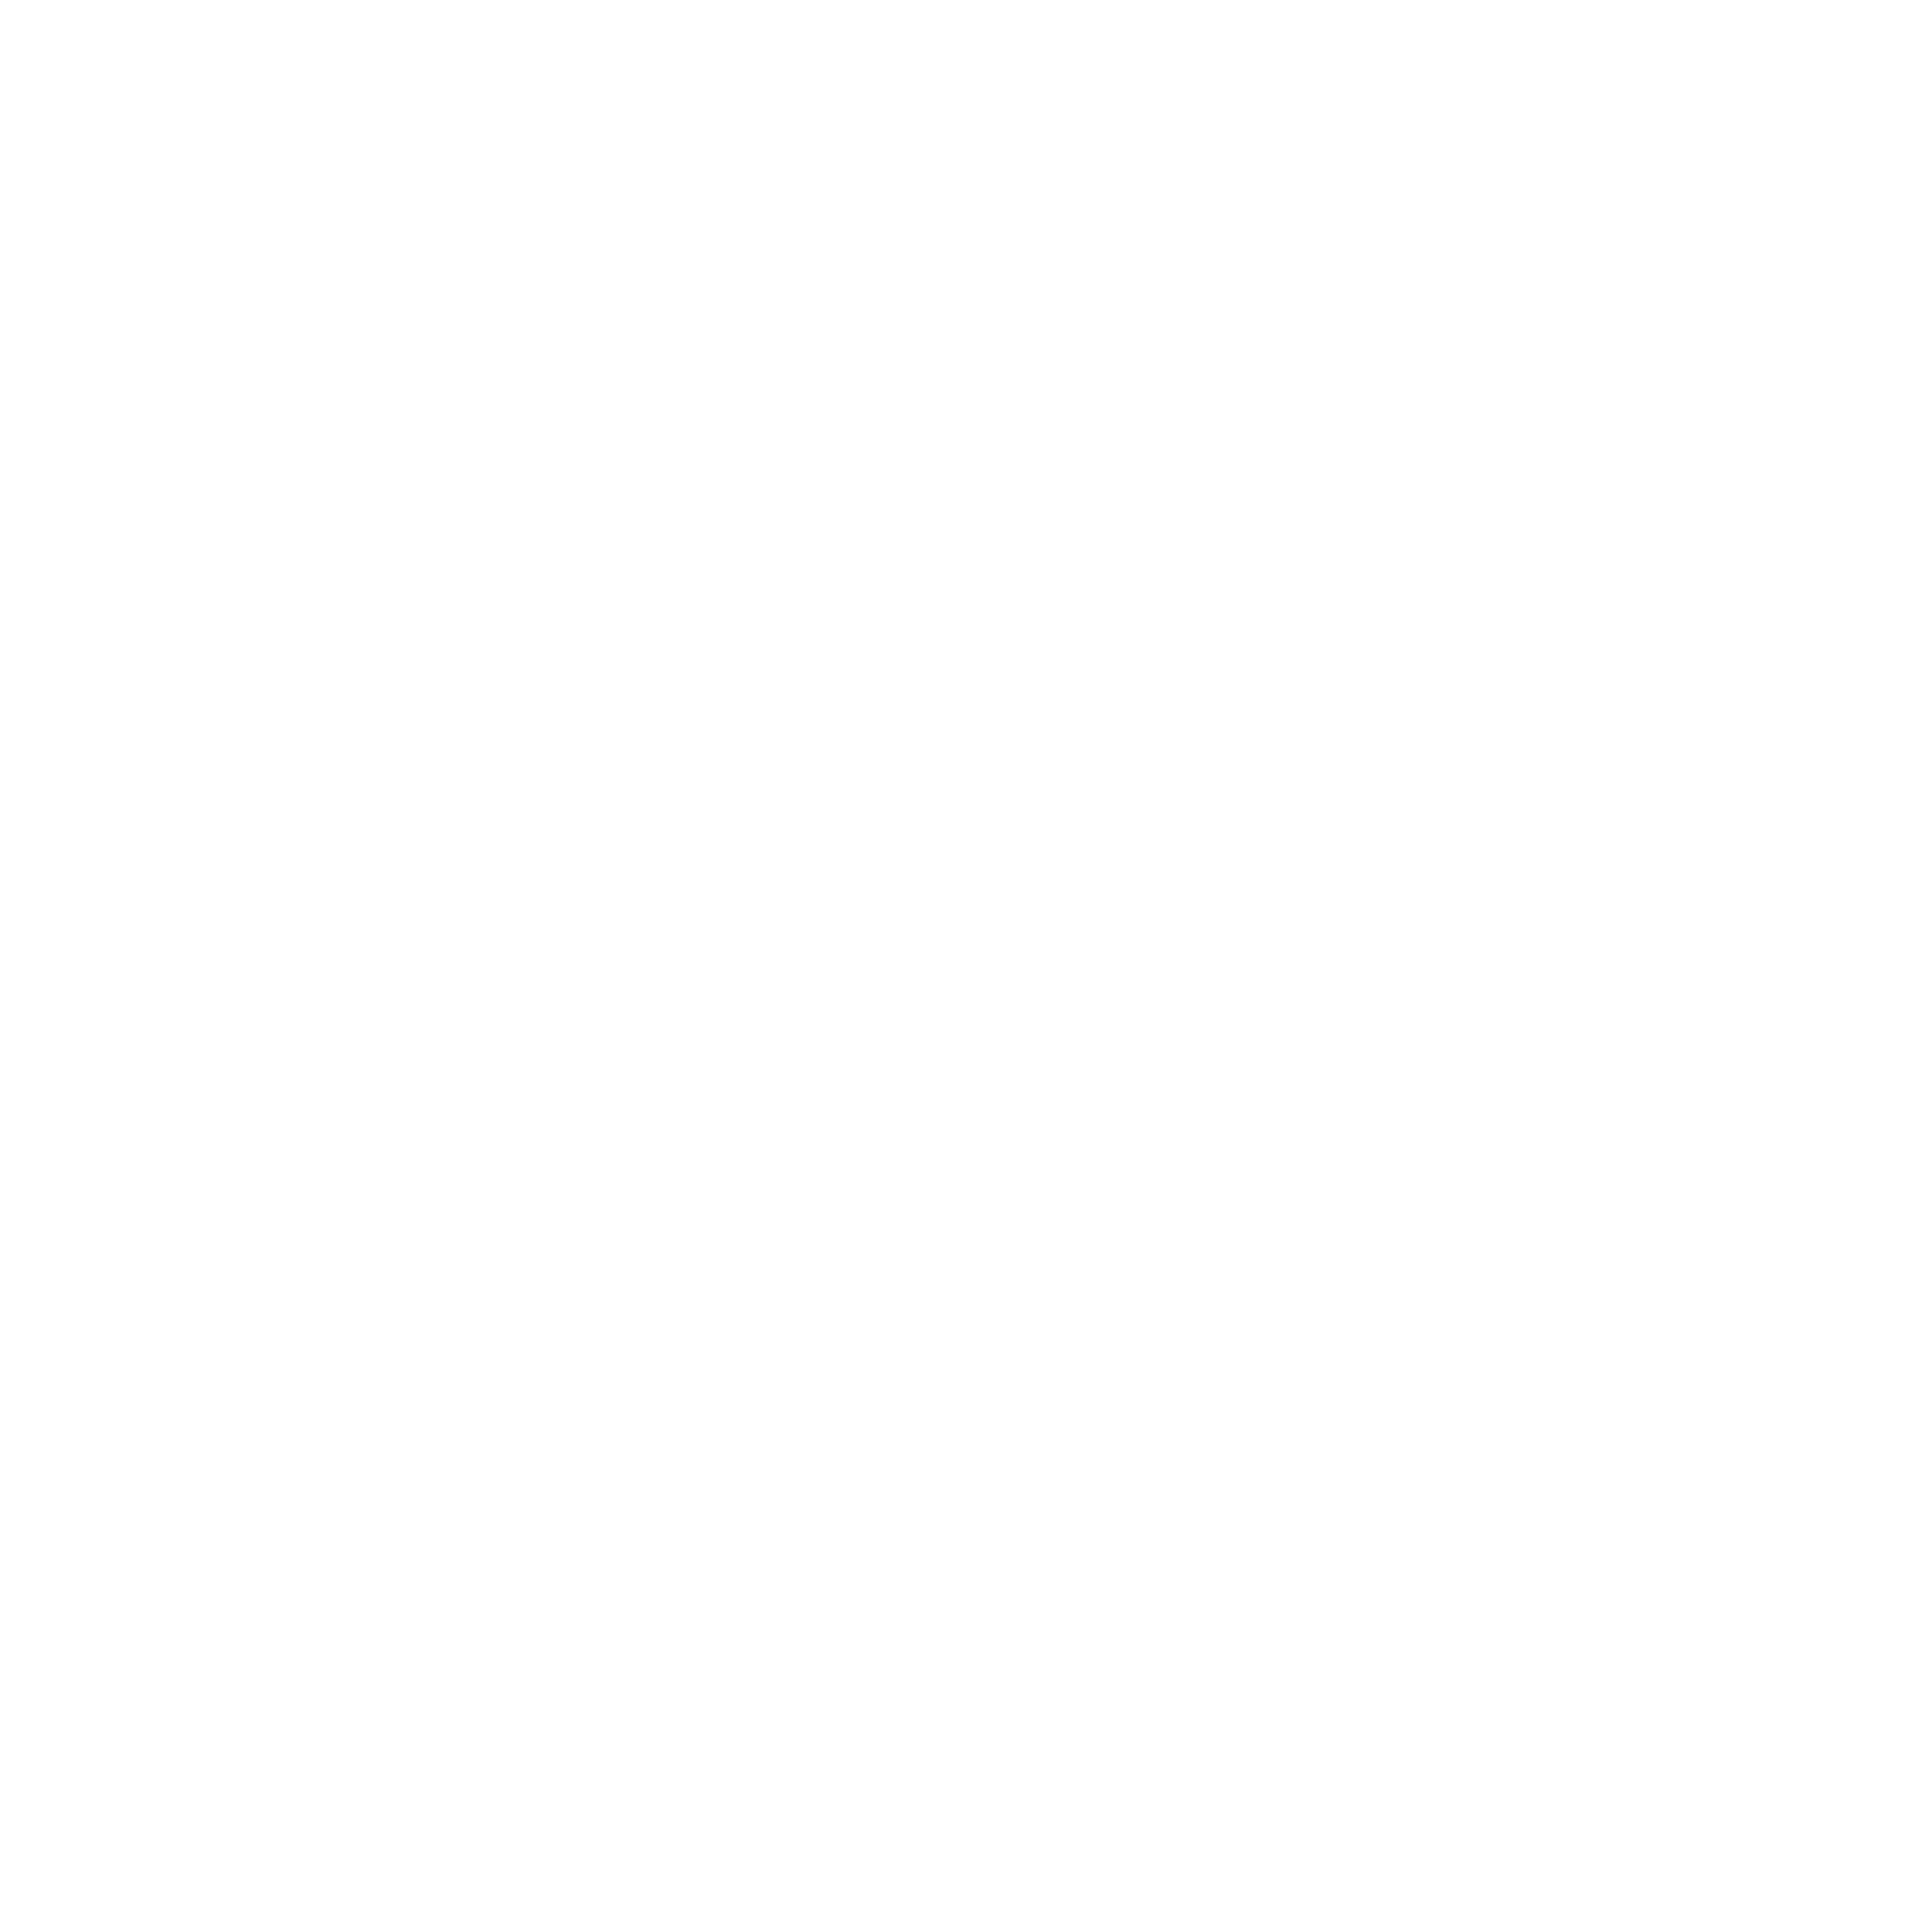 Junggesellenverein "St. Georg" Löhndorf e.V.